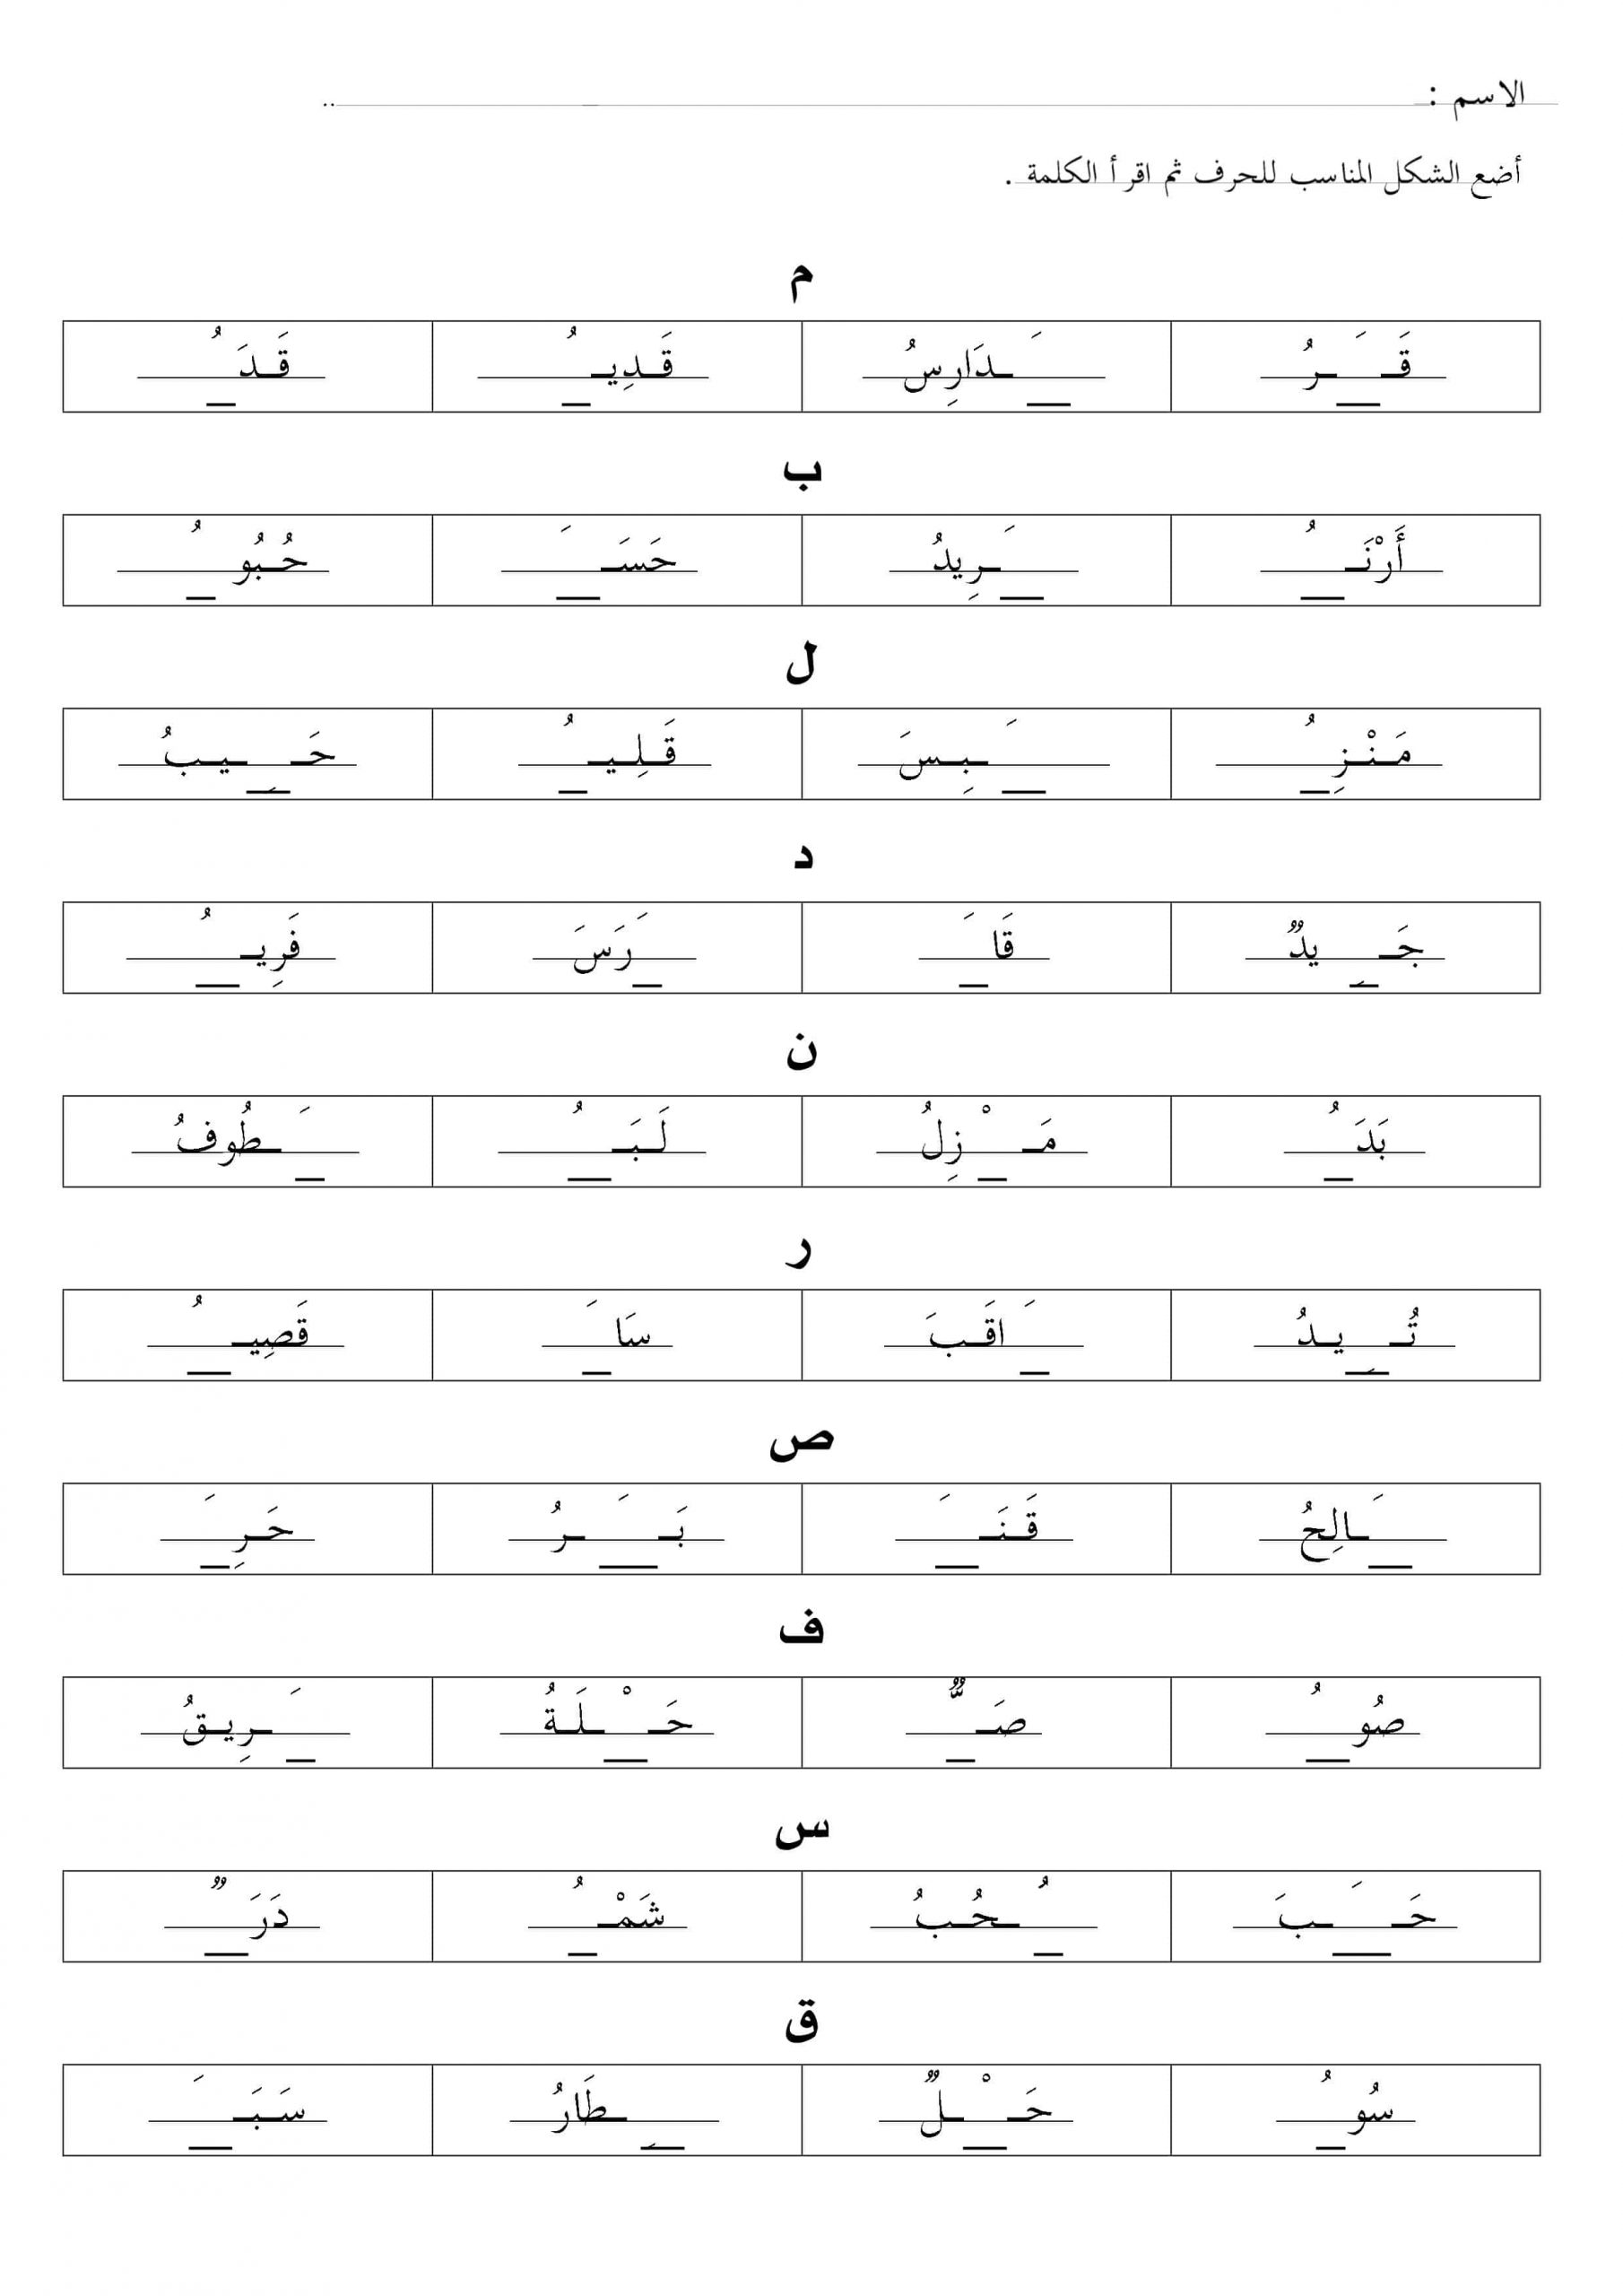 ورقة عمل متنوعة اشكال الحروف الصف الاول مادة اللغة العربية 